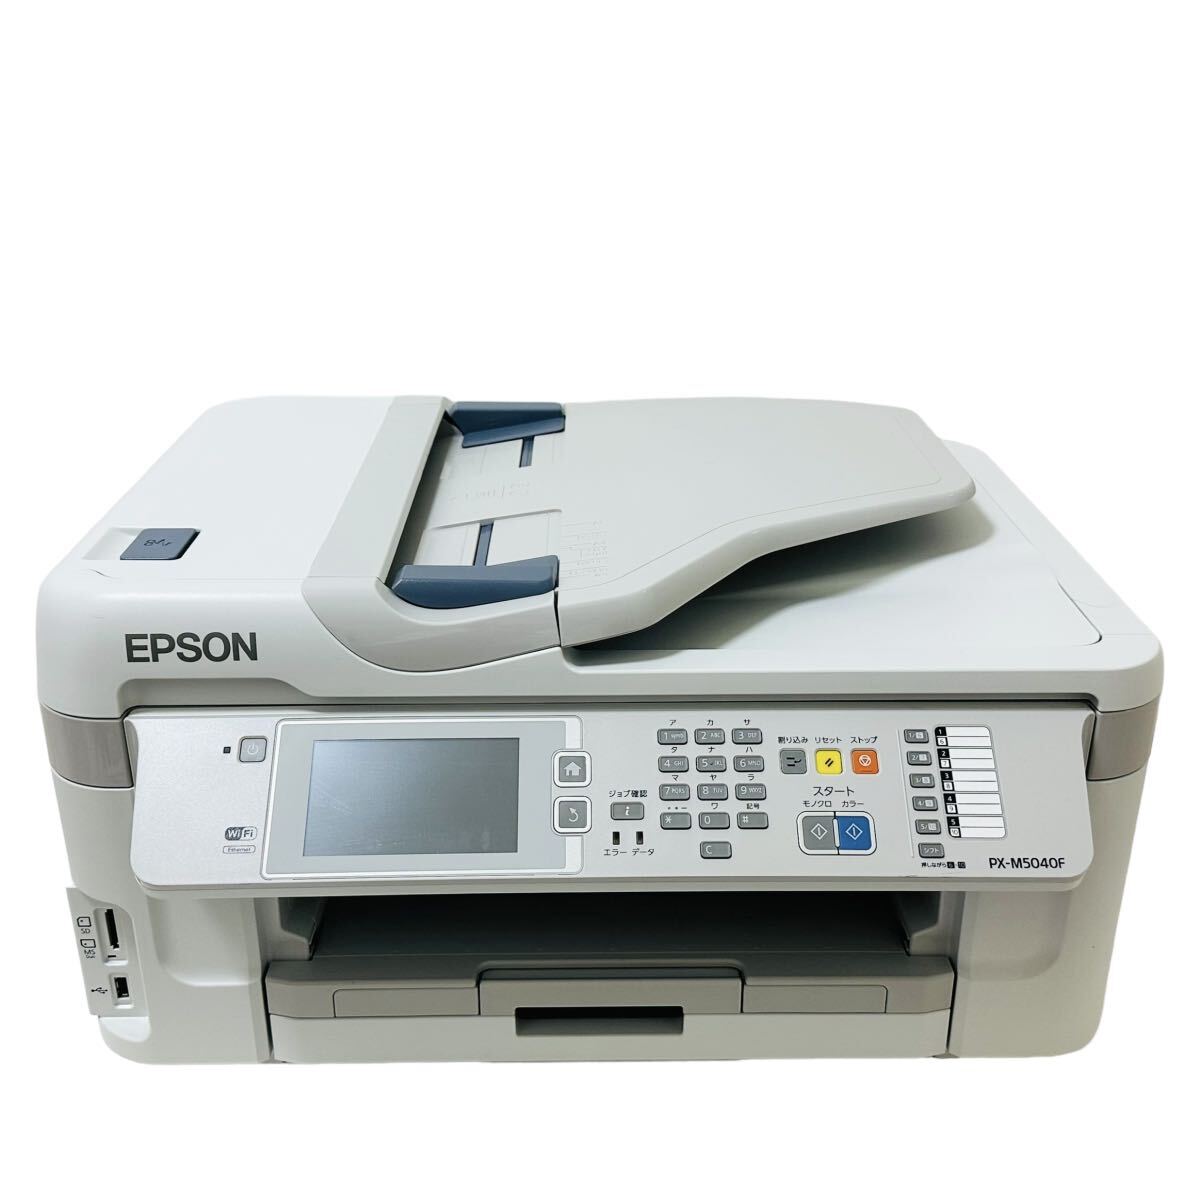 ★ 人気商品 ★ EPSON エプソン インクジェット複合機 PX-M5040F インクジェット プリンター A3 複合機 ビジネスプリンター カセット A4_画像2